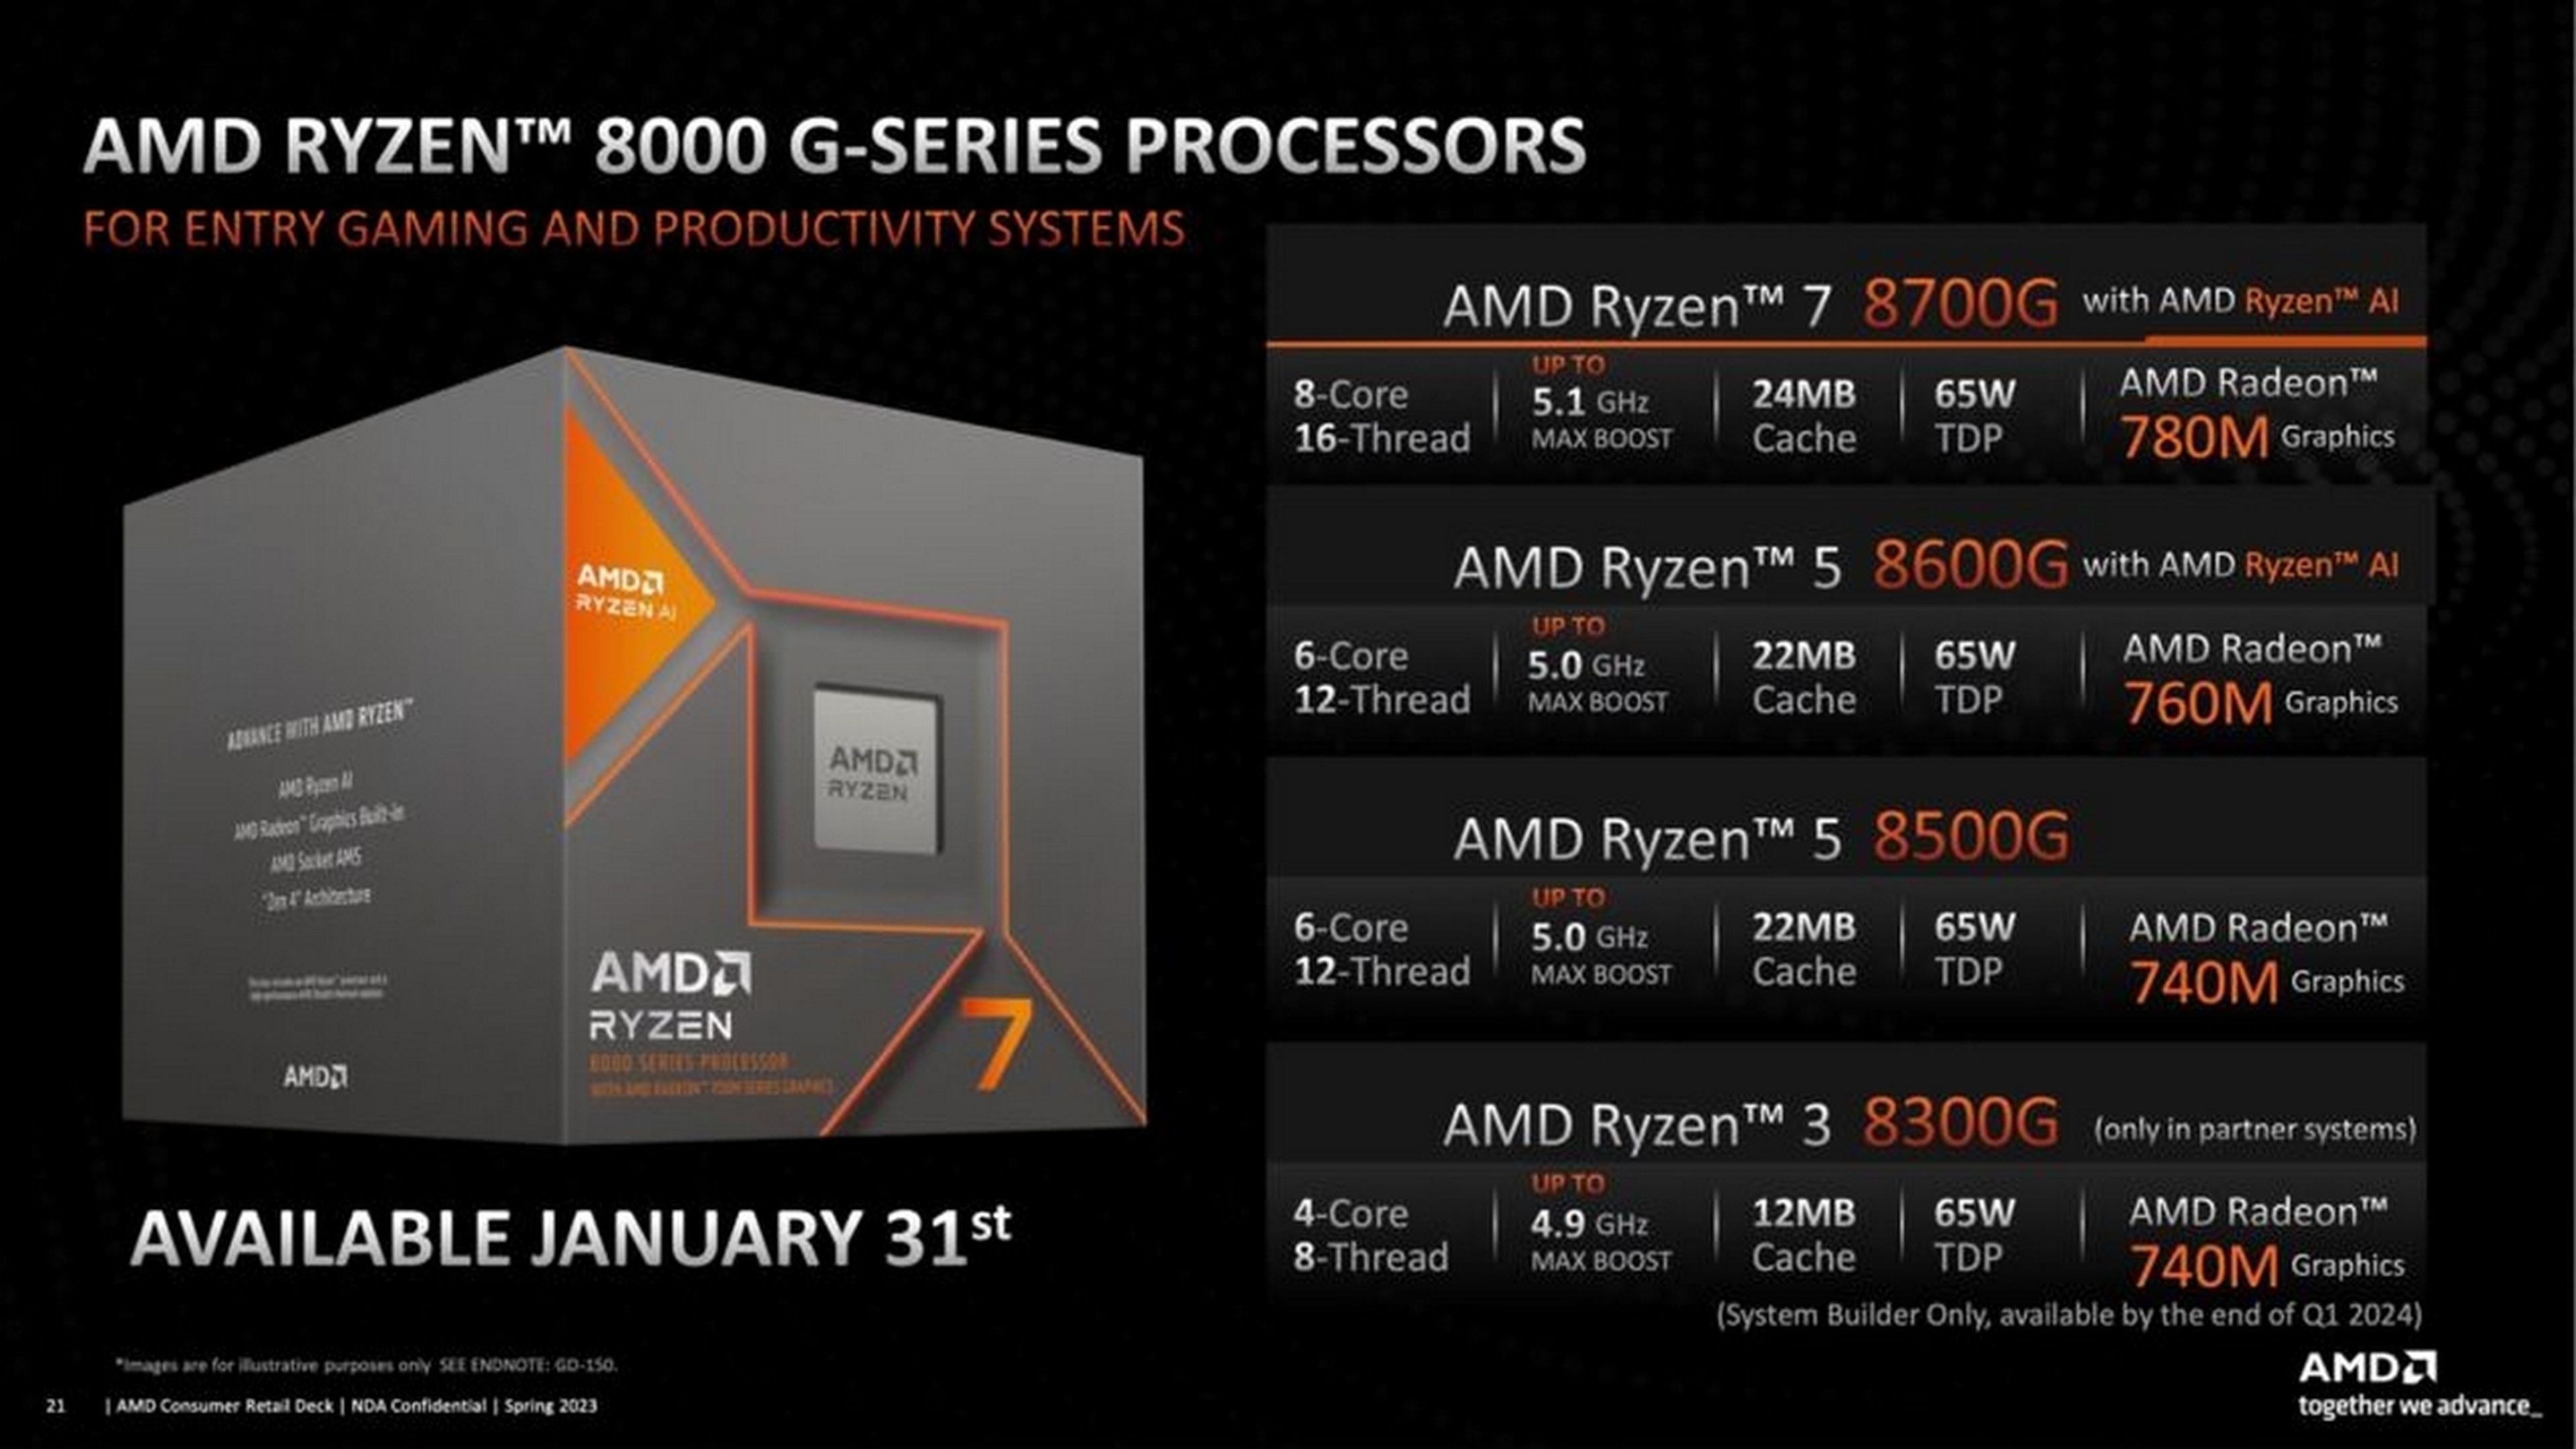 AMD Ryzen 8000 G